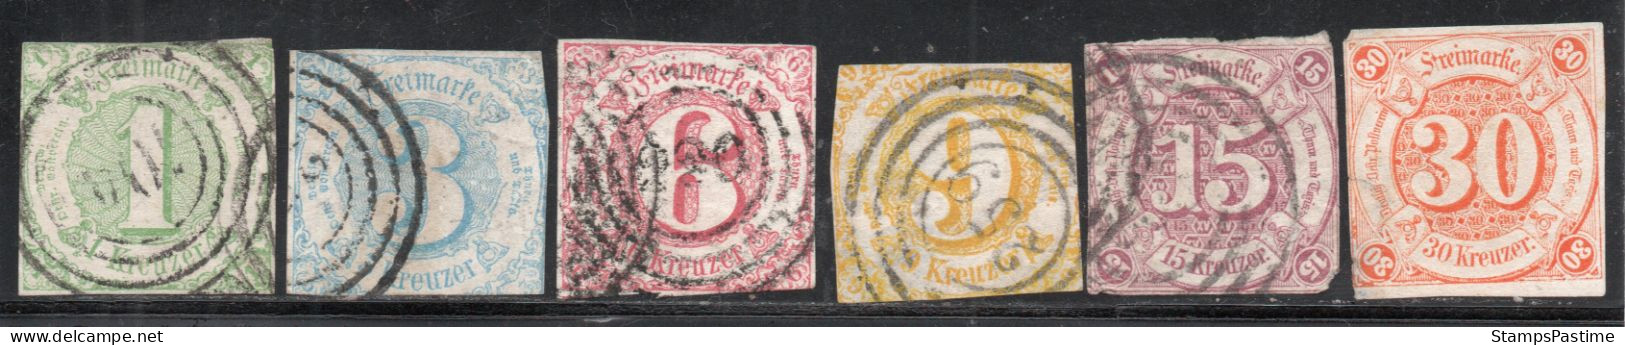 ALEMANIA – THURN Y TAXIS SUR Serie Completa X 6 Sellos Usados CIFRAS Año 1859 – Valorizada En Catálogo € 374,25 - Oblitérés